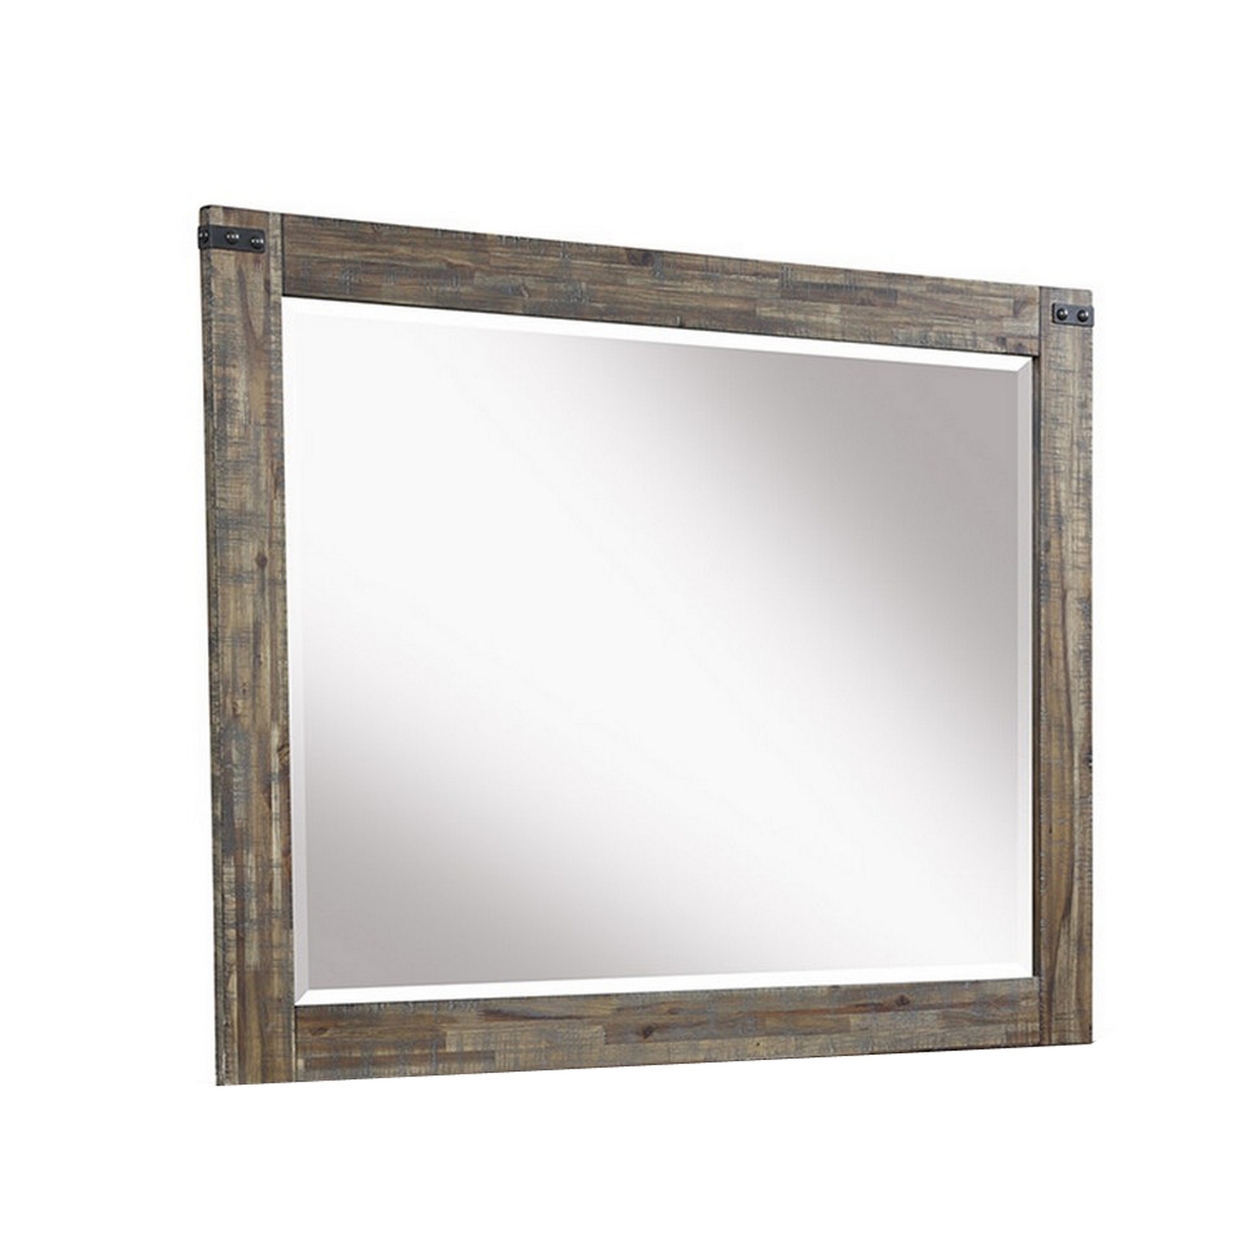 Galle 38 X 50 Dresser Mirror, Rectangular, Metal Accents, Walnut Brown Wood -Saltoro Sherpi